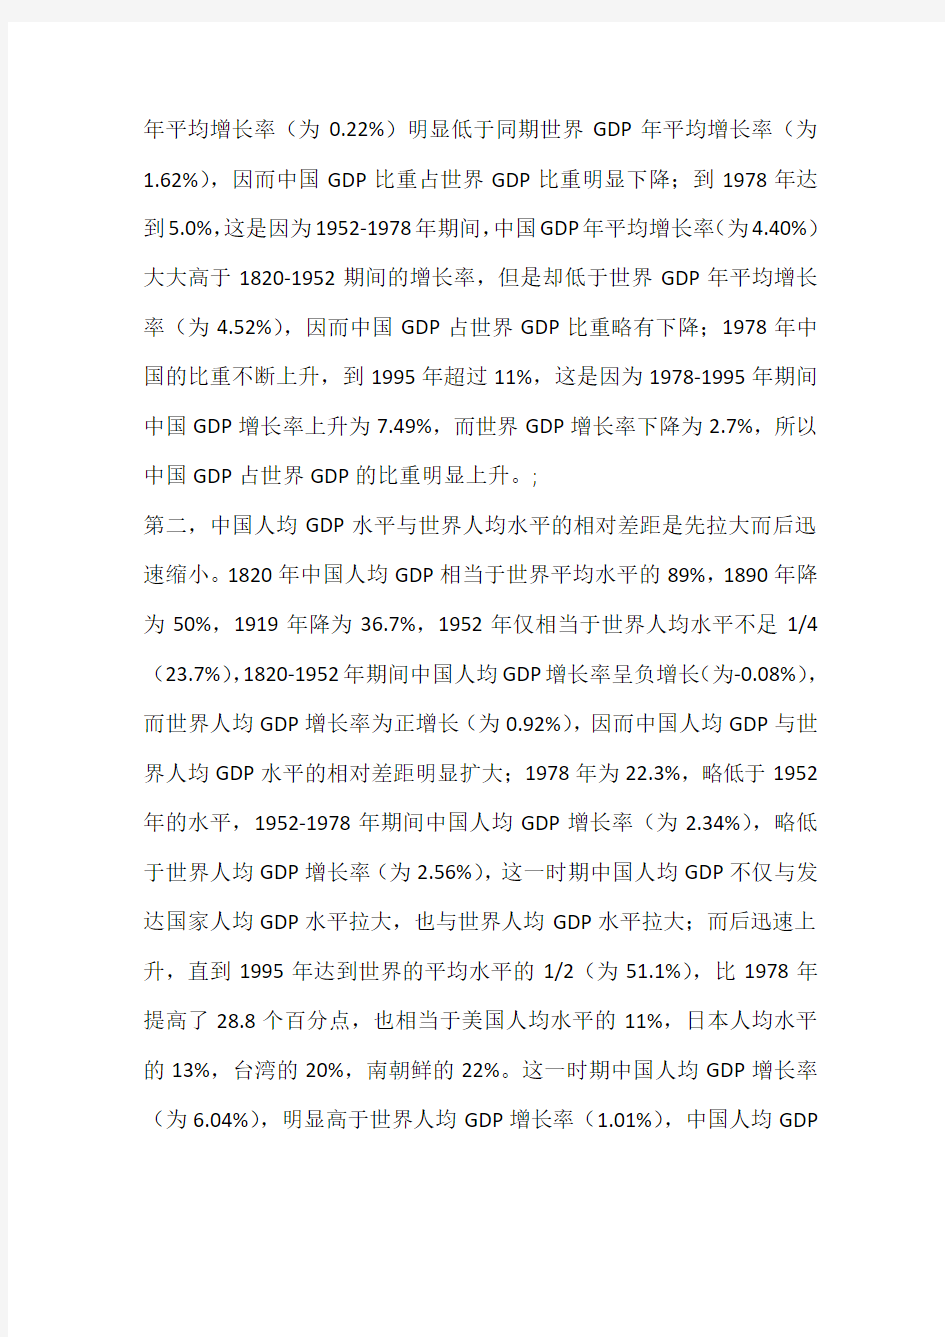 中国经济增长的现状、短期前景及长期趋势(一)